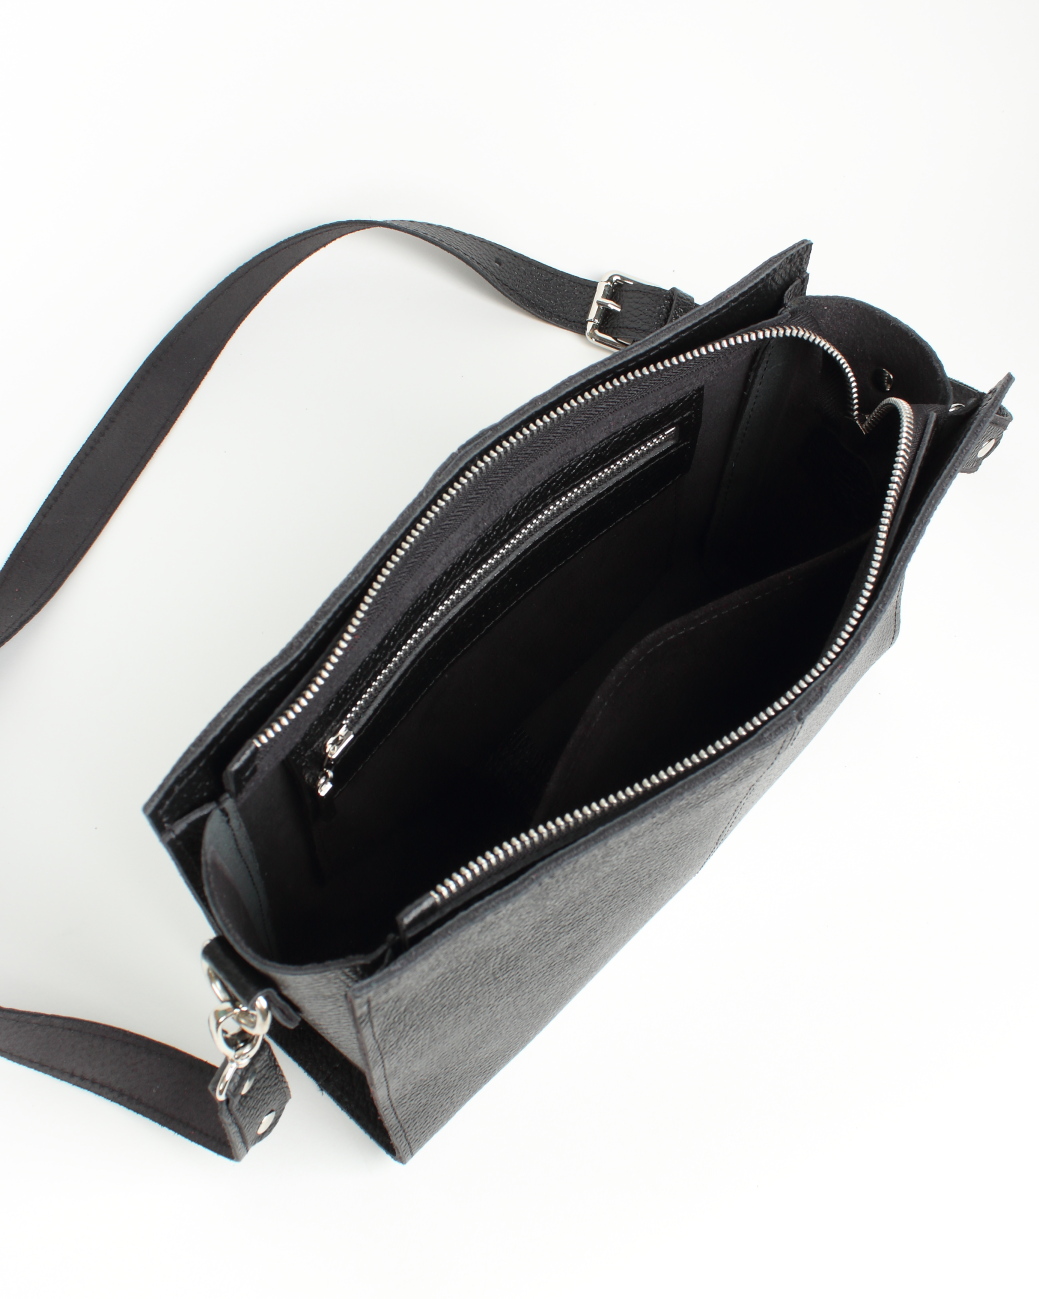 Женская кожаная сумка через плечо черная A025 black grain